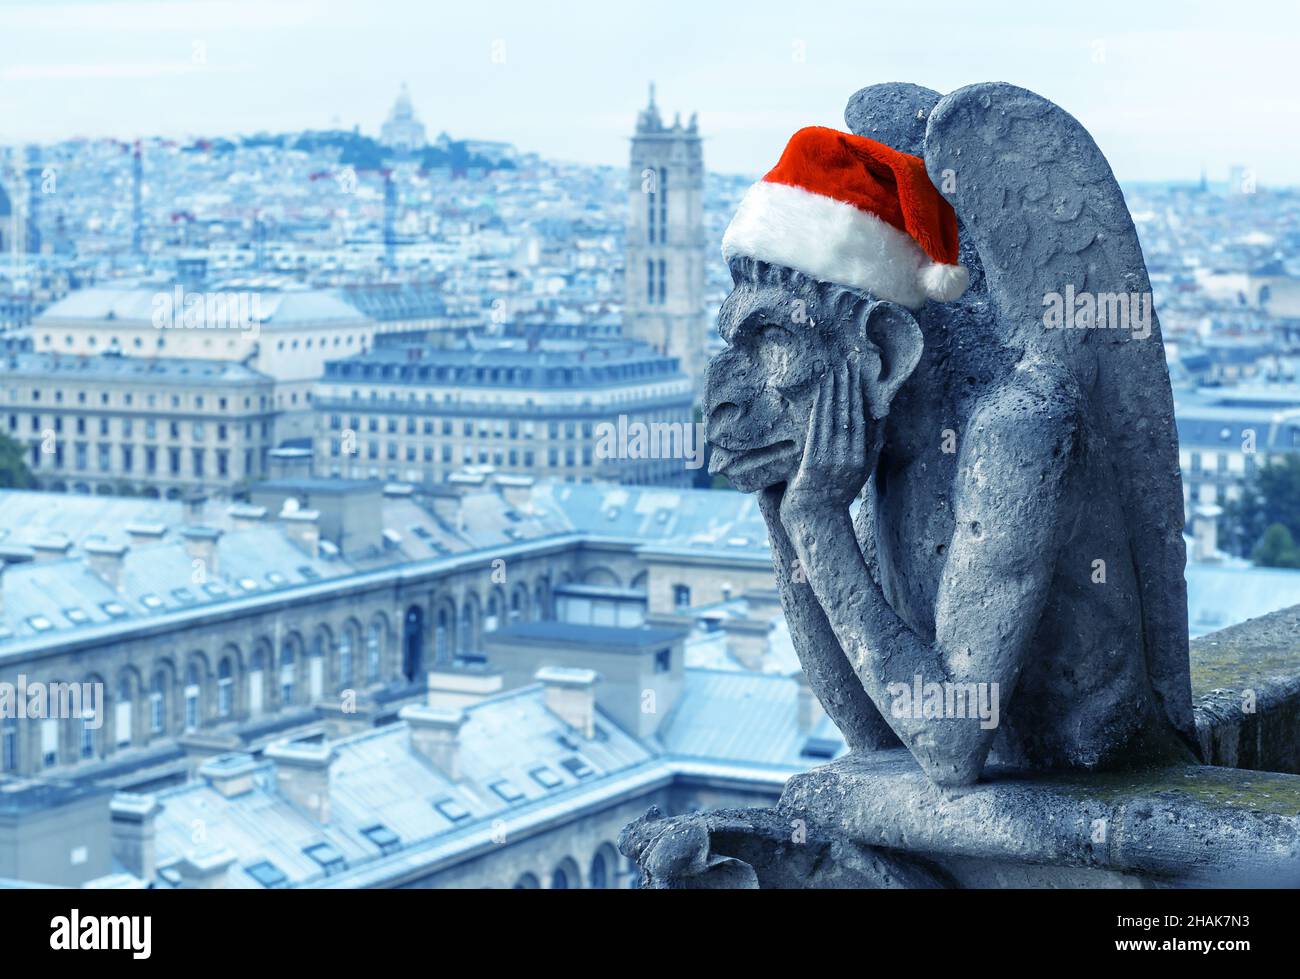 Weihnachten, Neujahr und Spaßkonzept, Gargoyle (Chimäre) der Kathedrale Notre Dame de Paris mit Santa Hut, Paris, Frankreich. Dieser Ort ist das Wahrzeichen von Pari Stockfoto